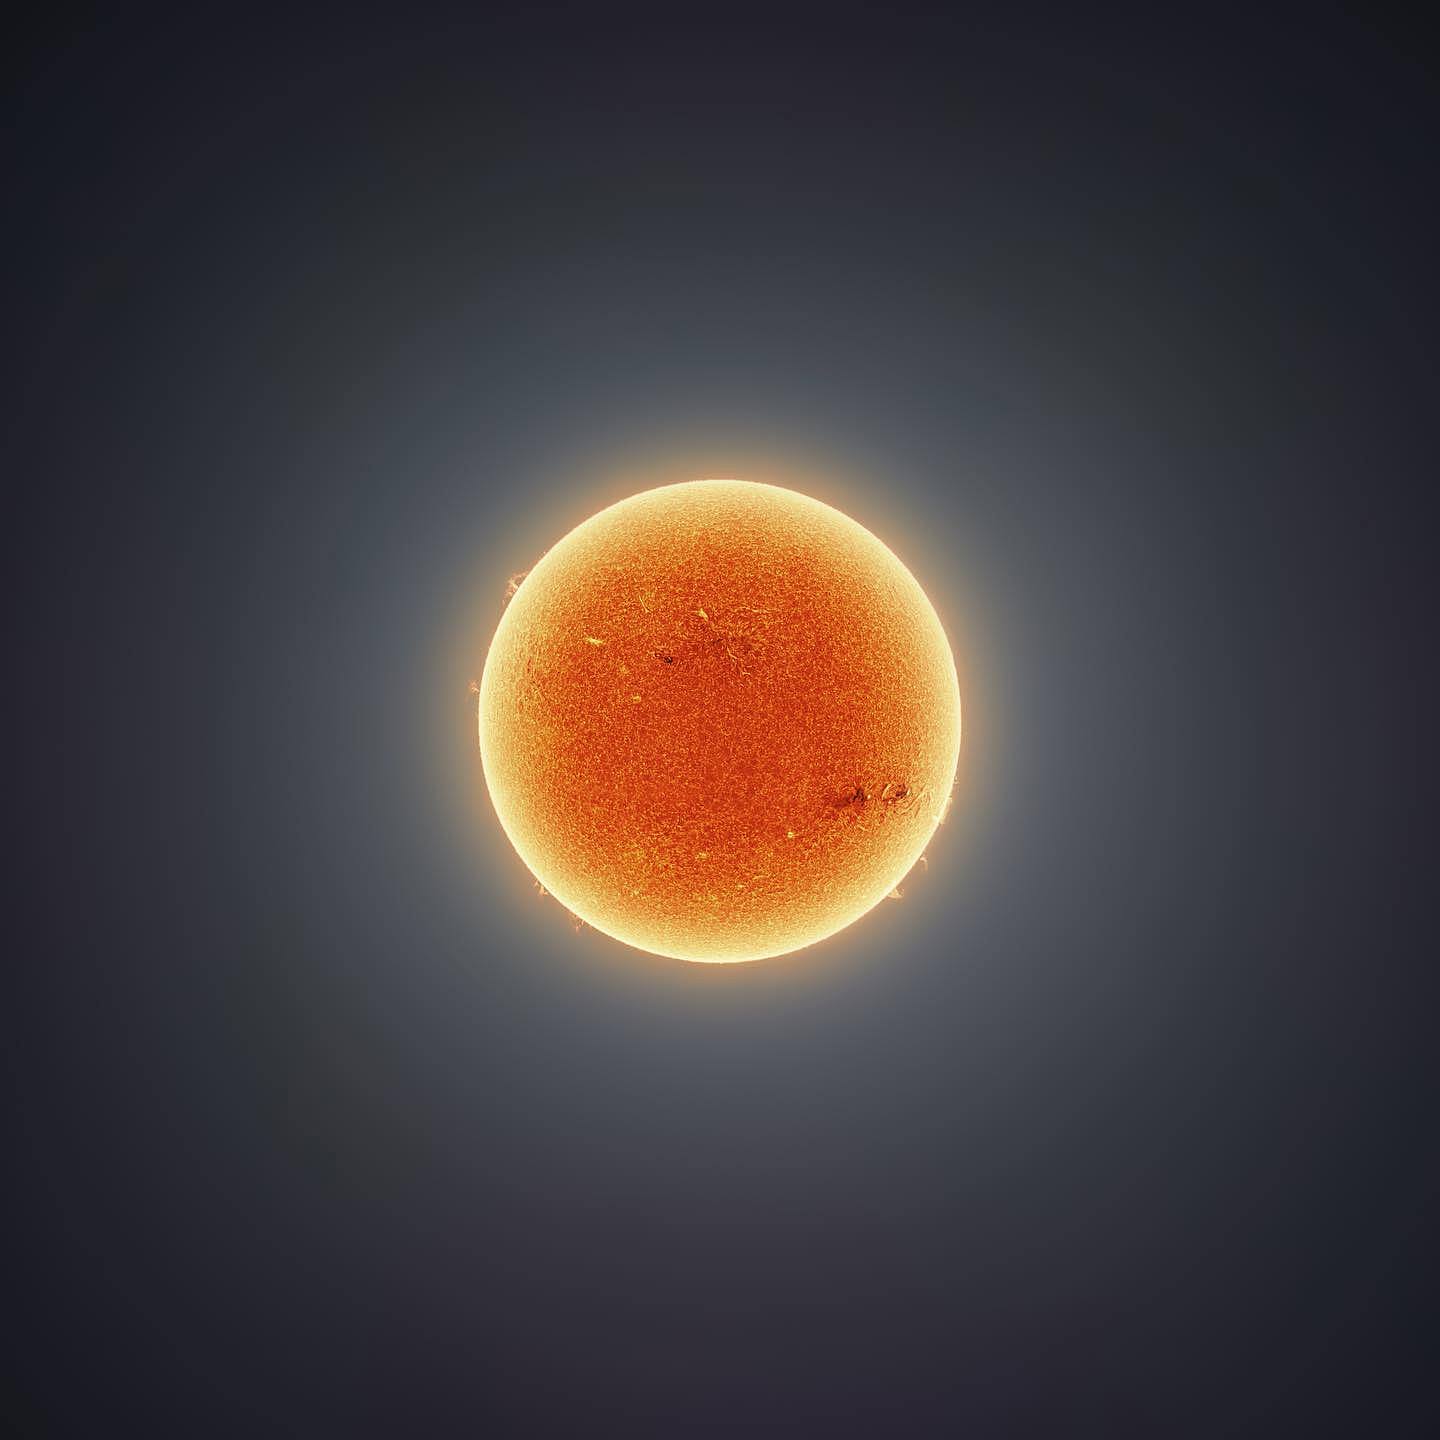 天文摄影家用15万张图制作出一张壮观的太阳照 - 4